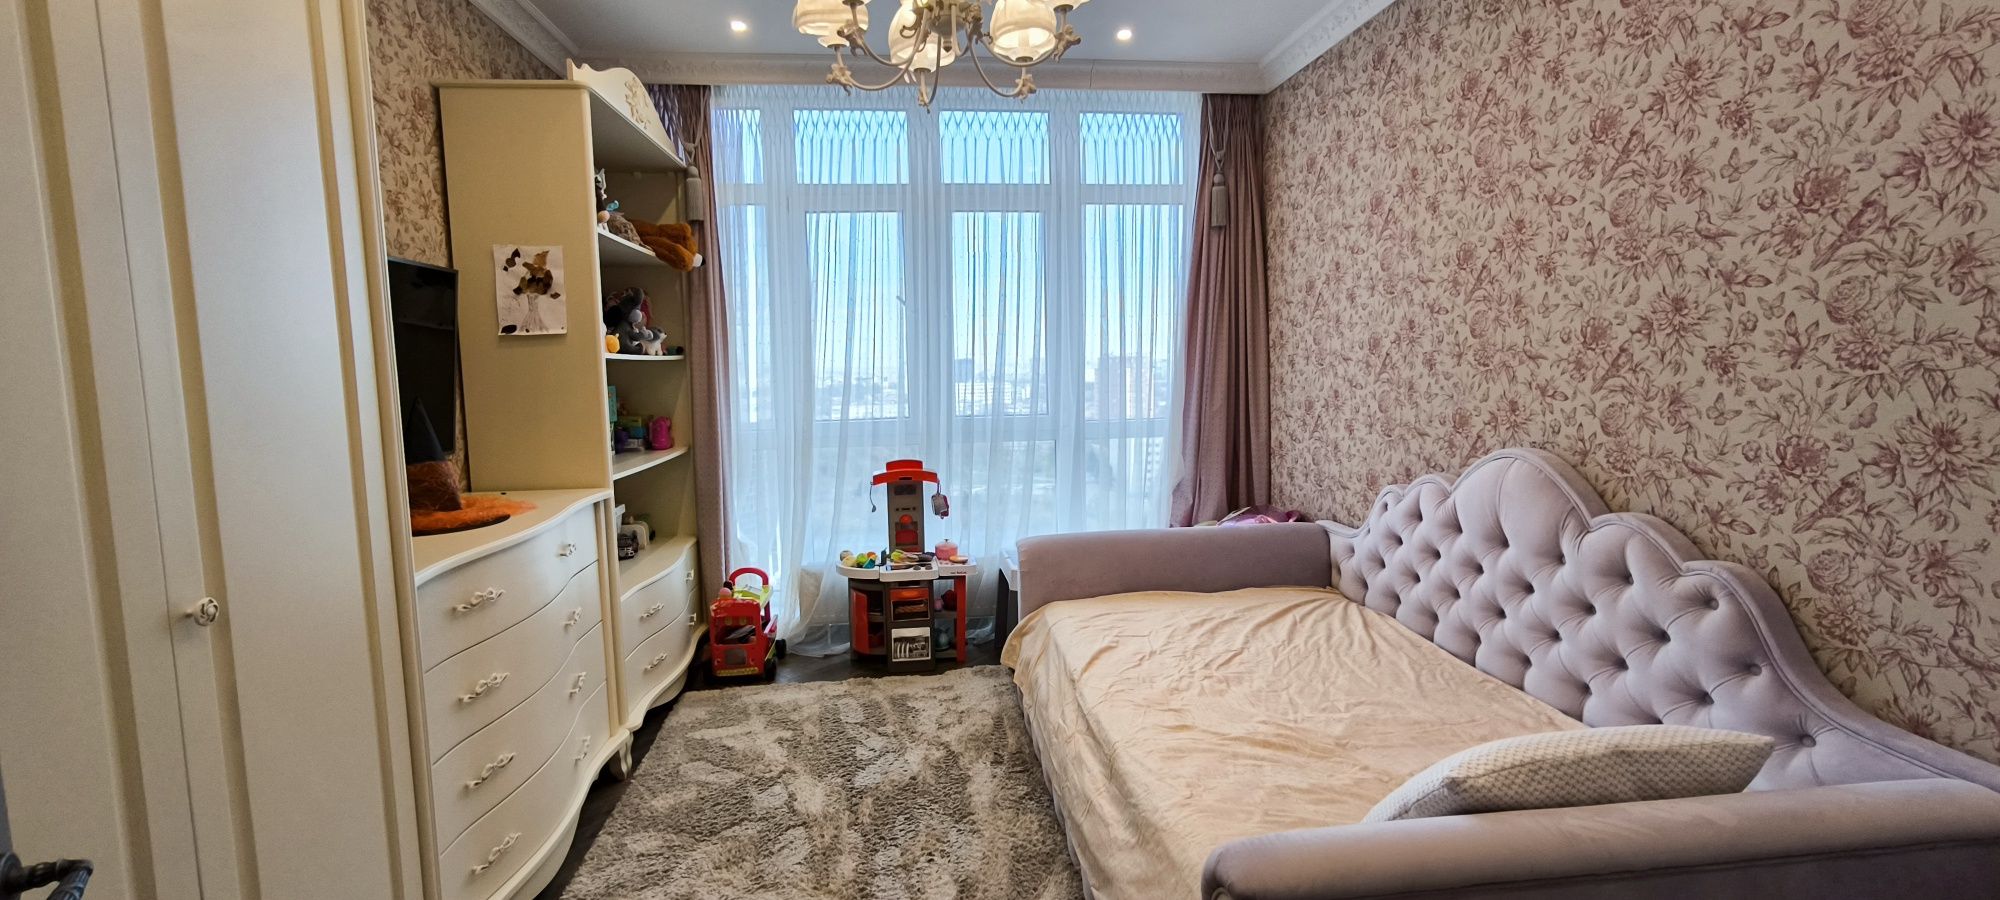 Стильная, новая, молодежная квартира в новом комплексе на пр.Гагарина